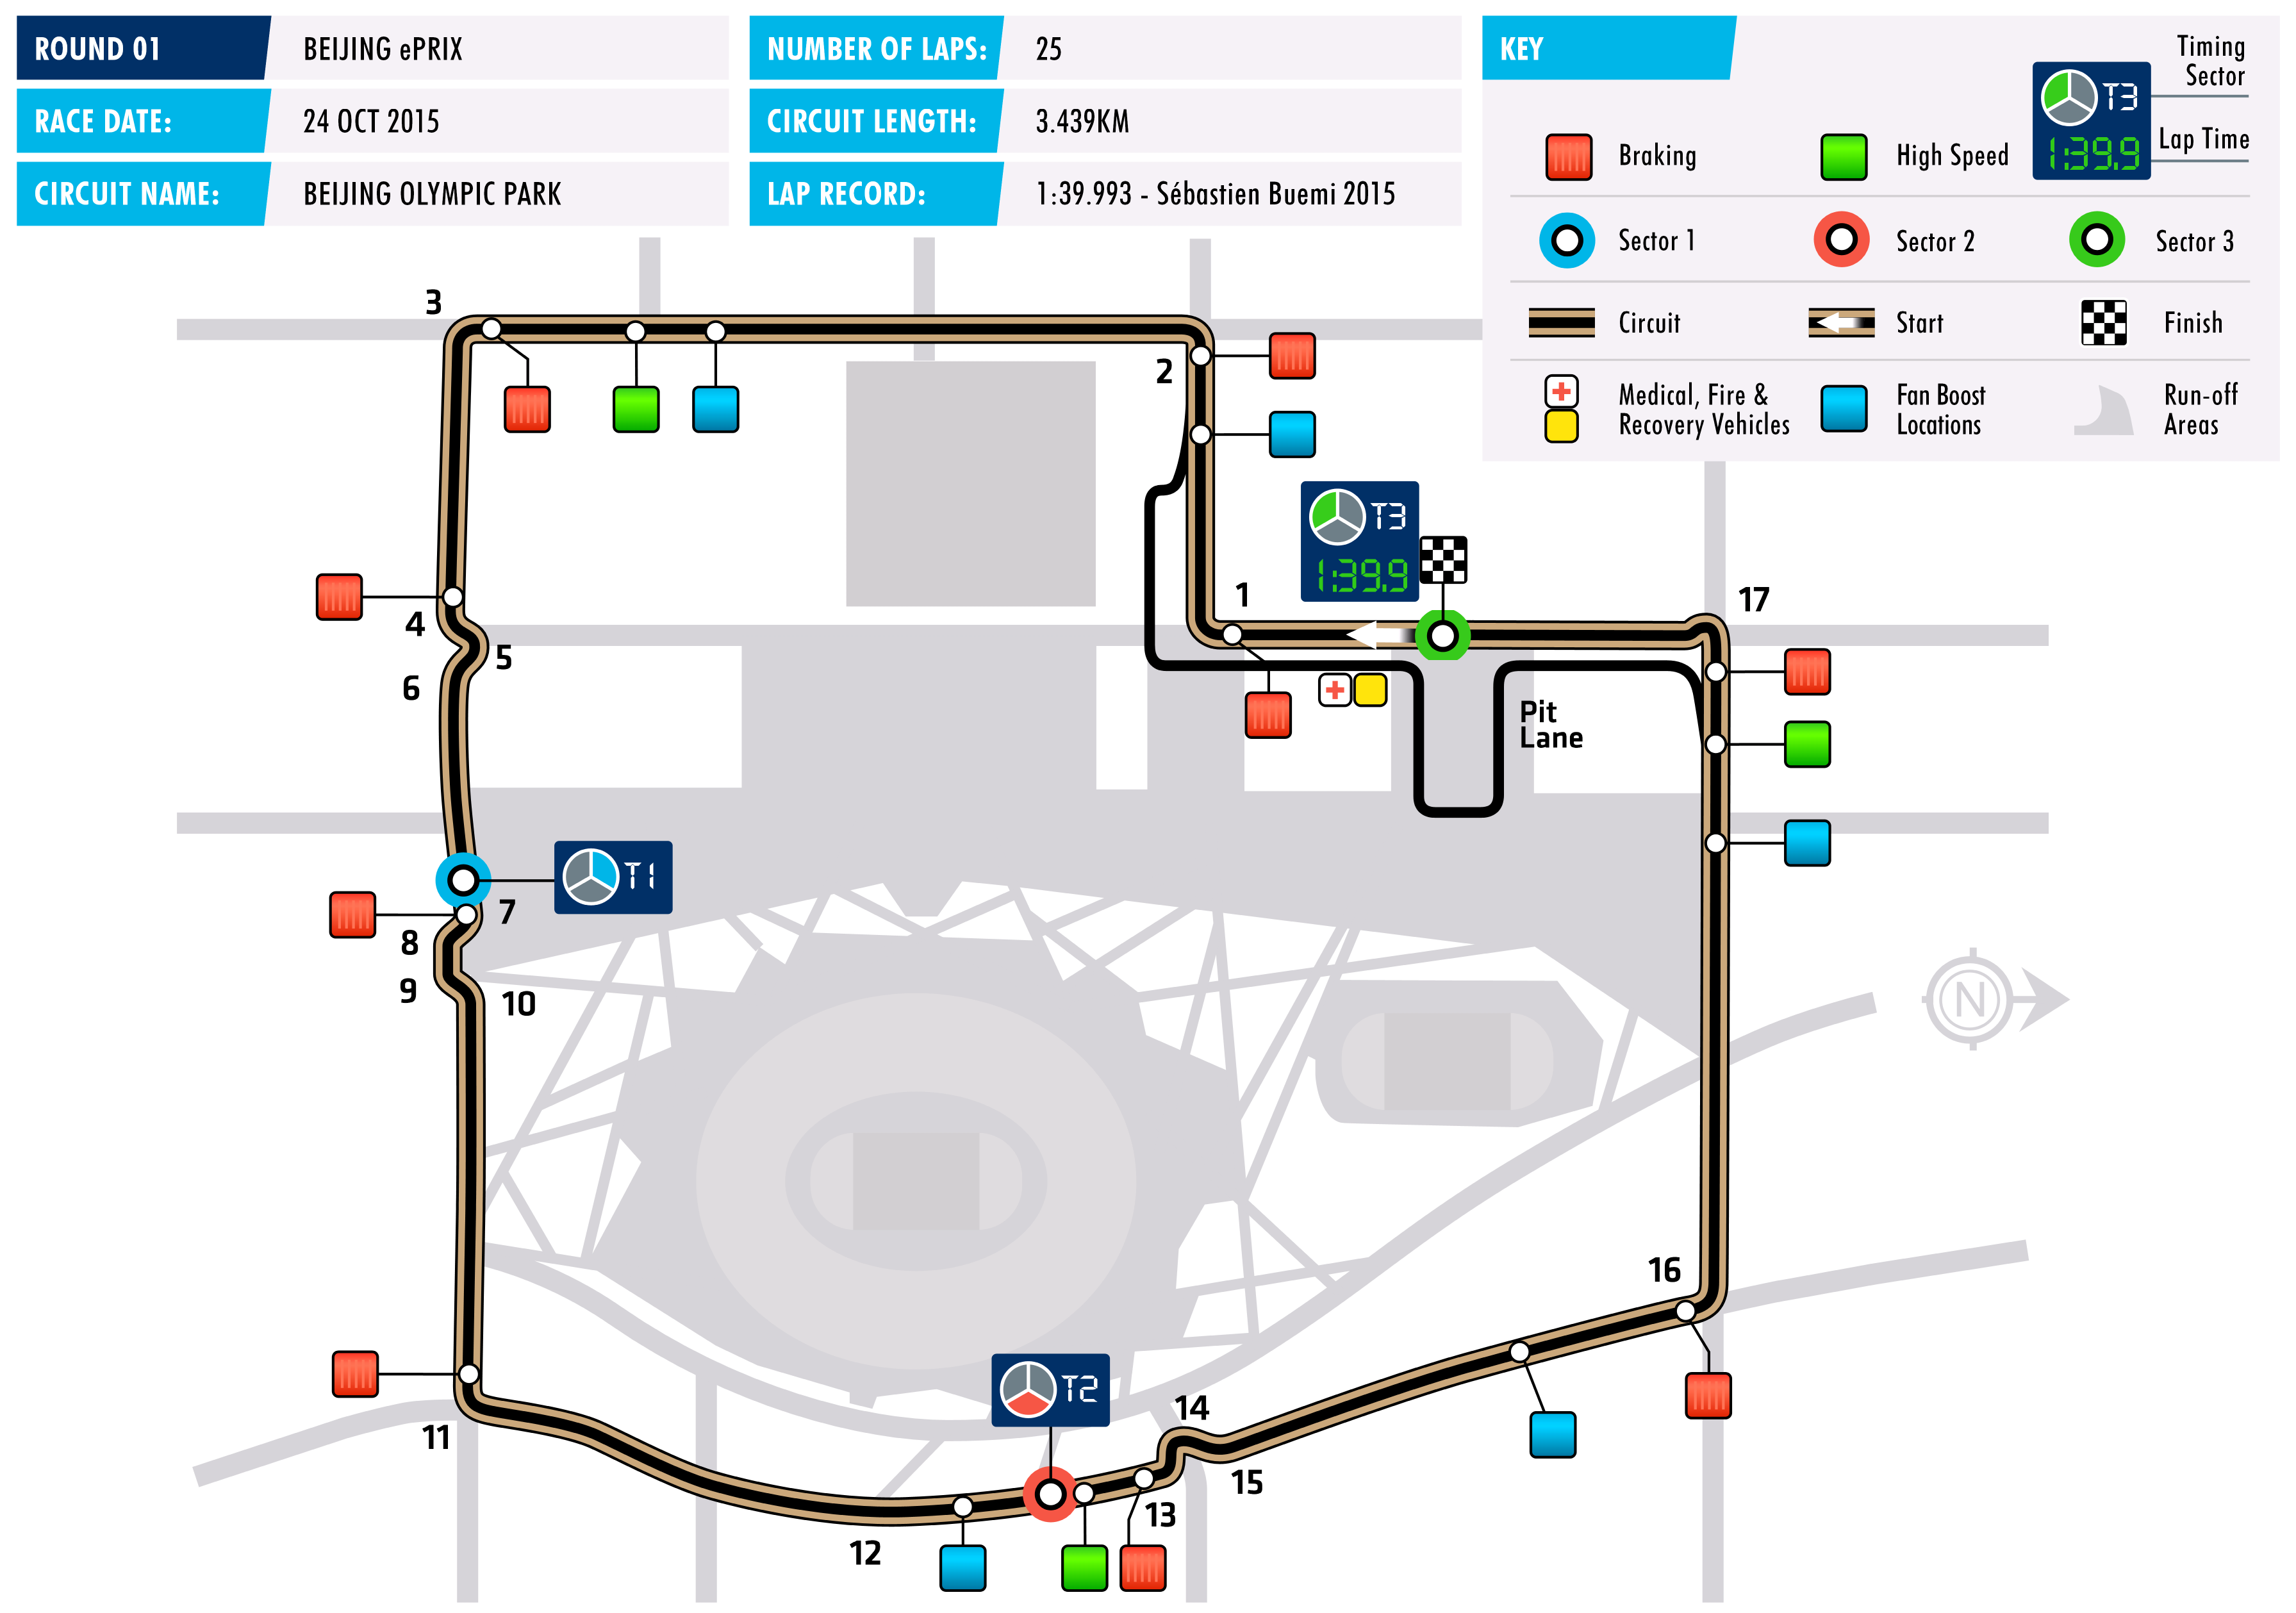 2016 Beijing ePrix - Circuit Map